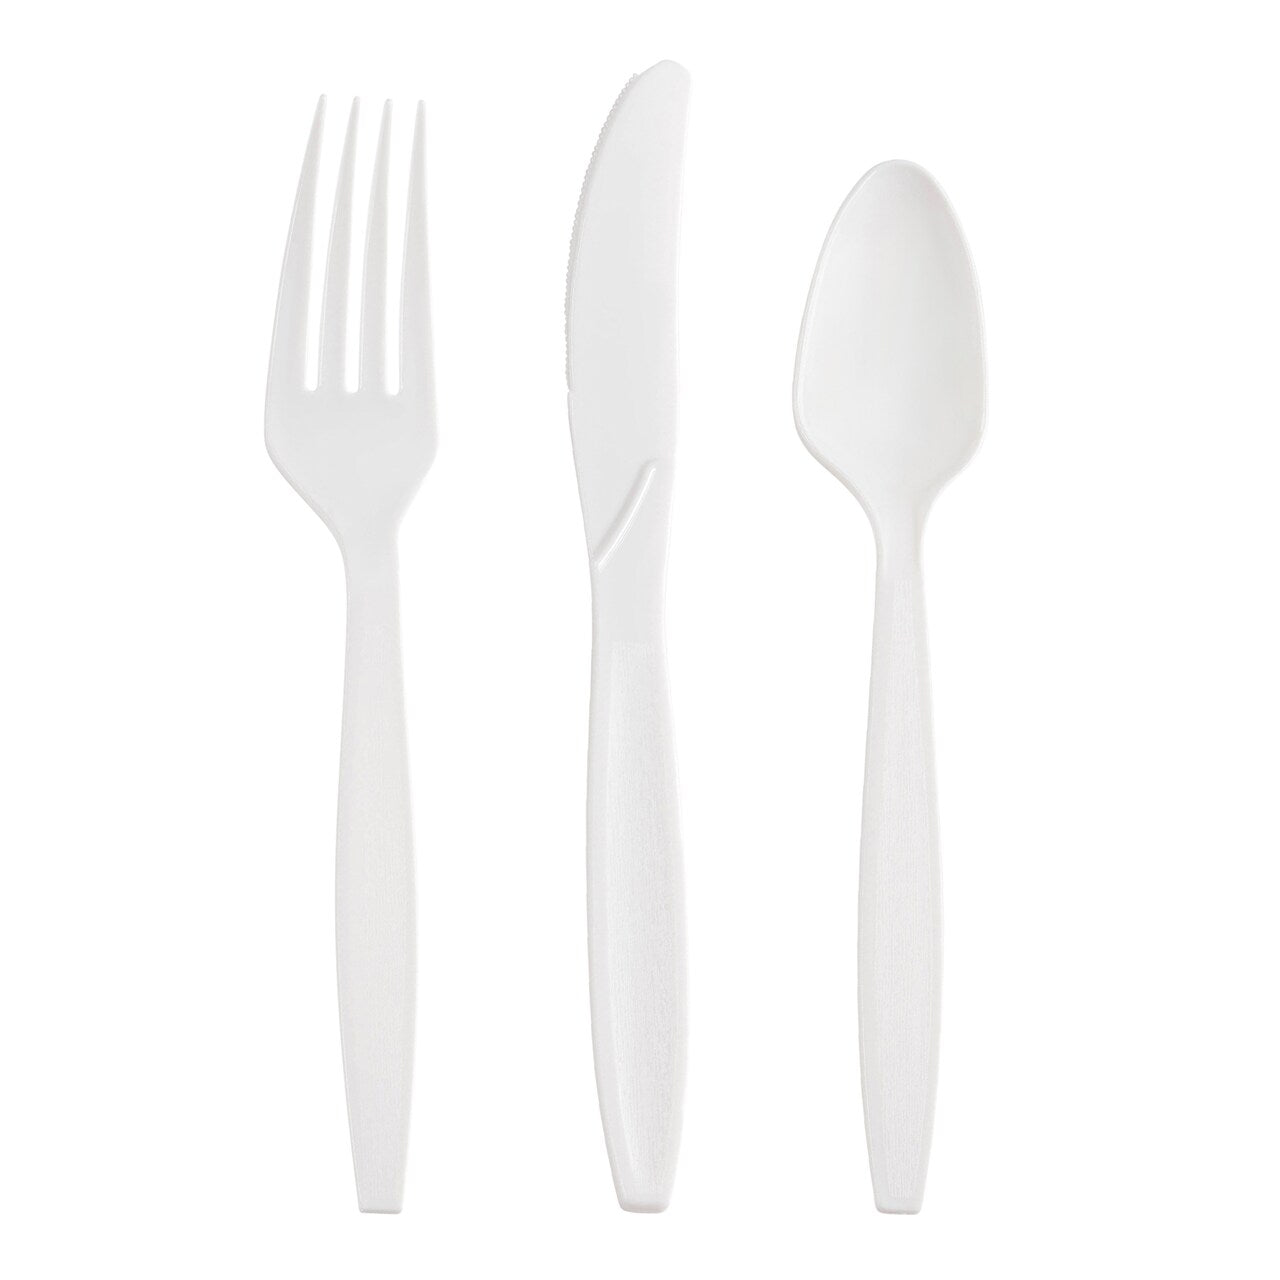 Medium Weight Cutlery Set WHITE - 300SETS/CTN